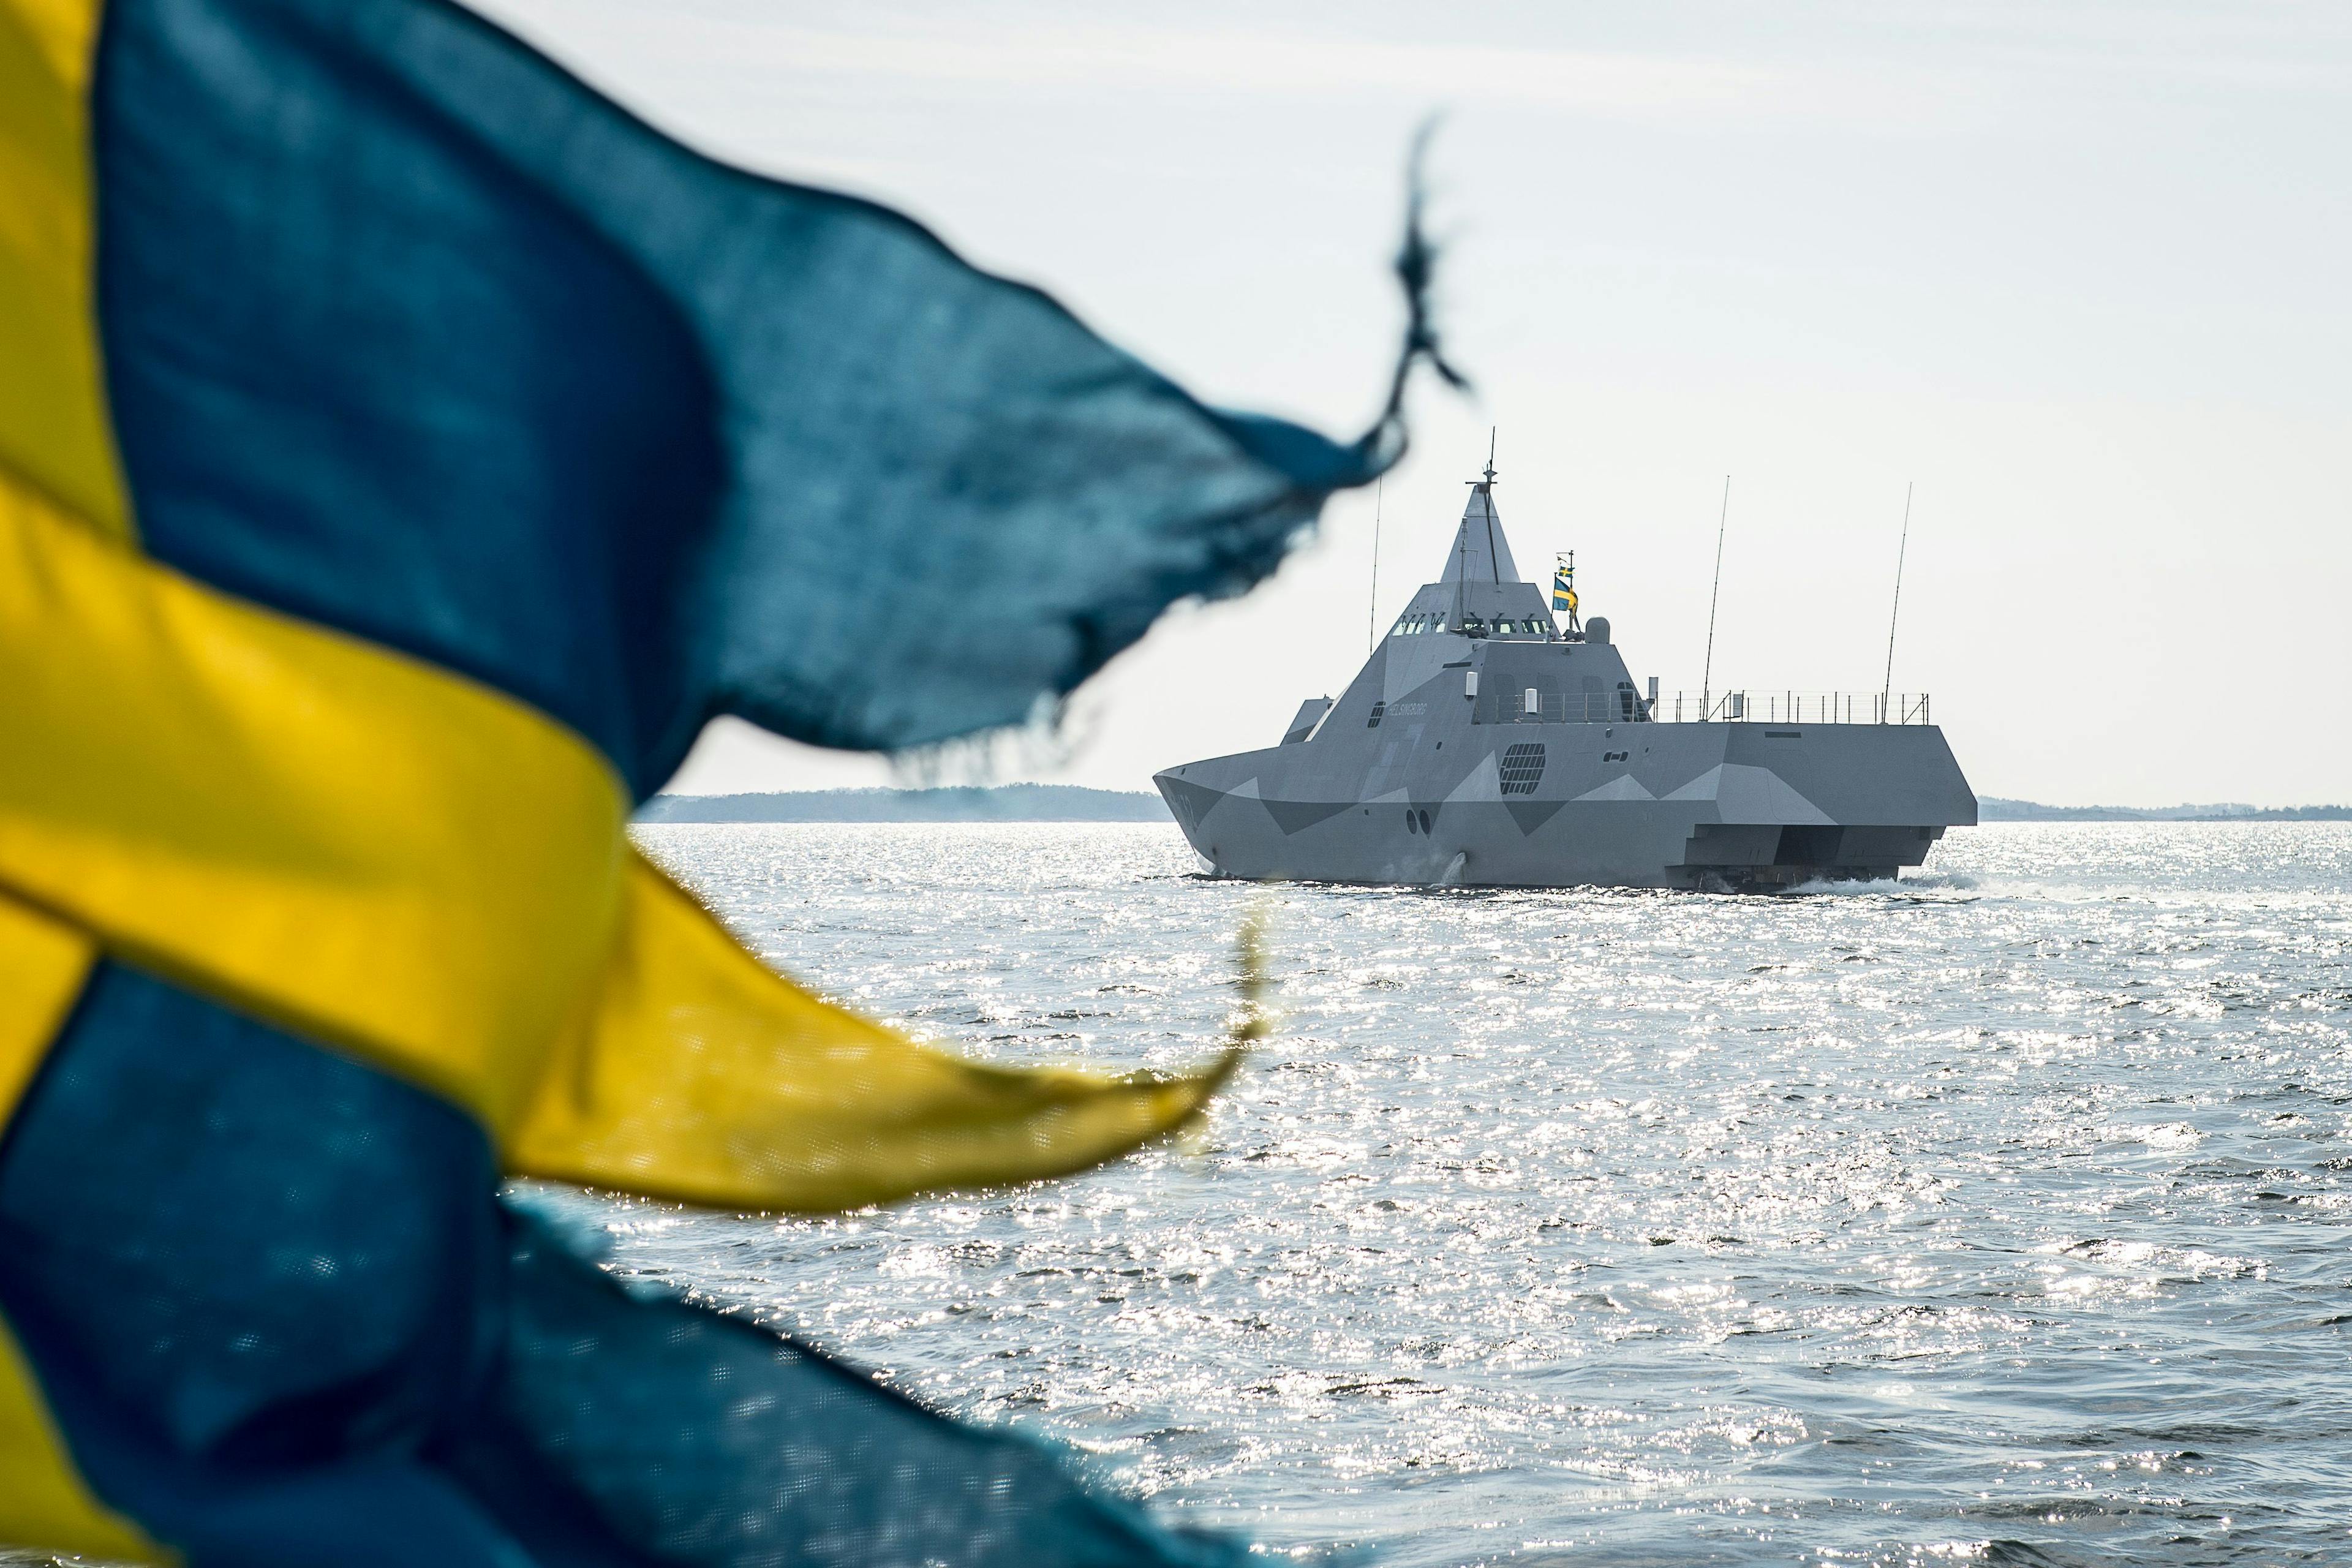 Swedish Navy's 500th anniversary